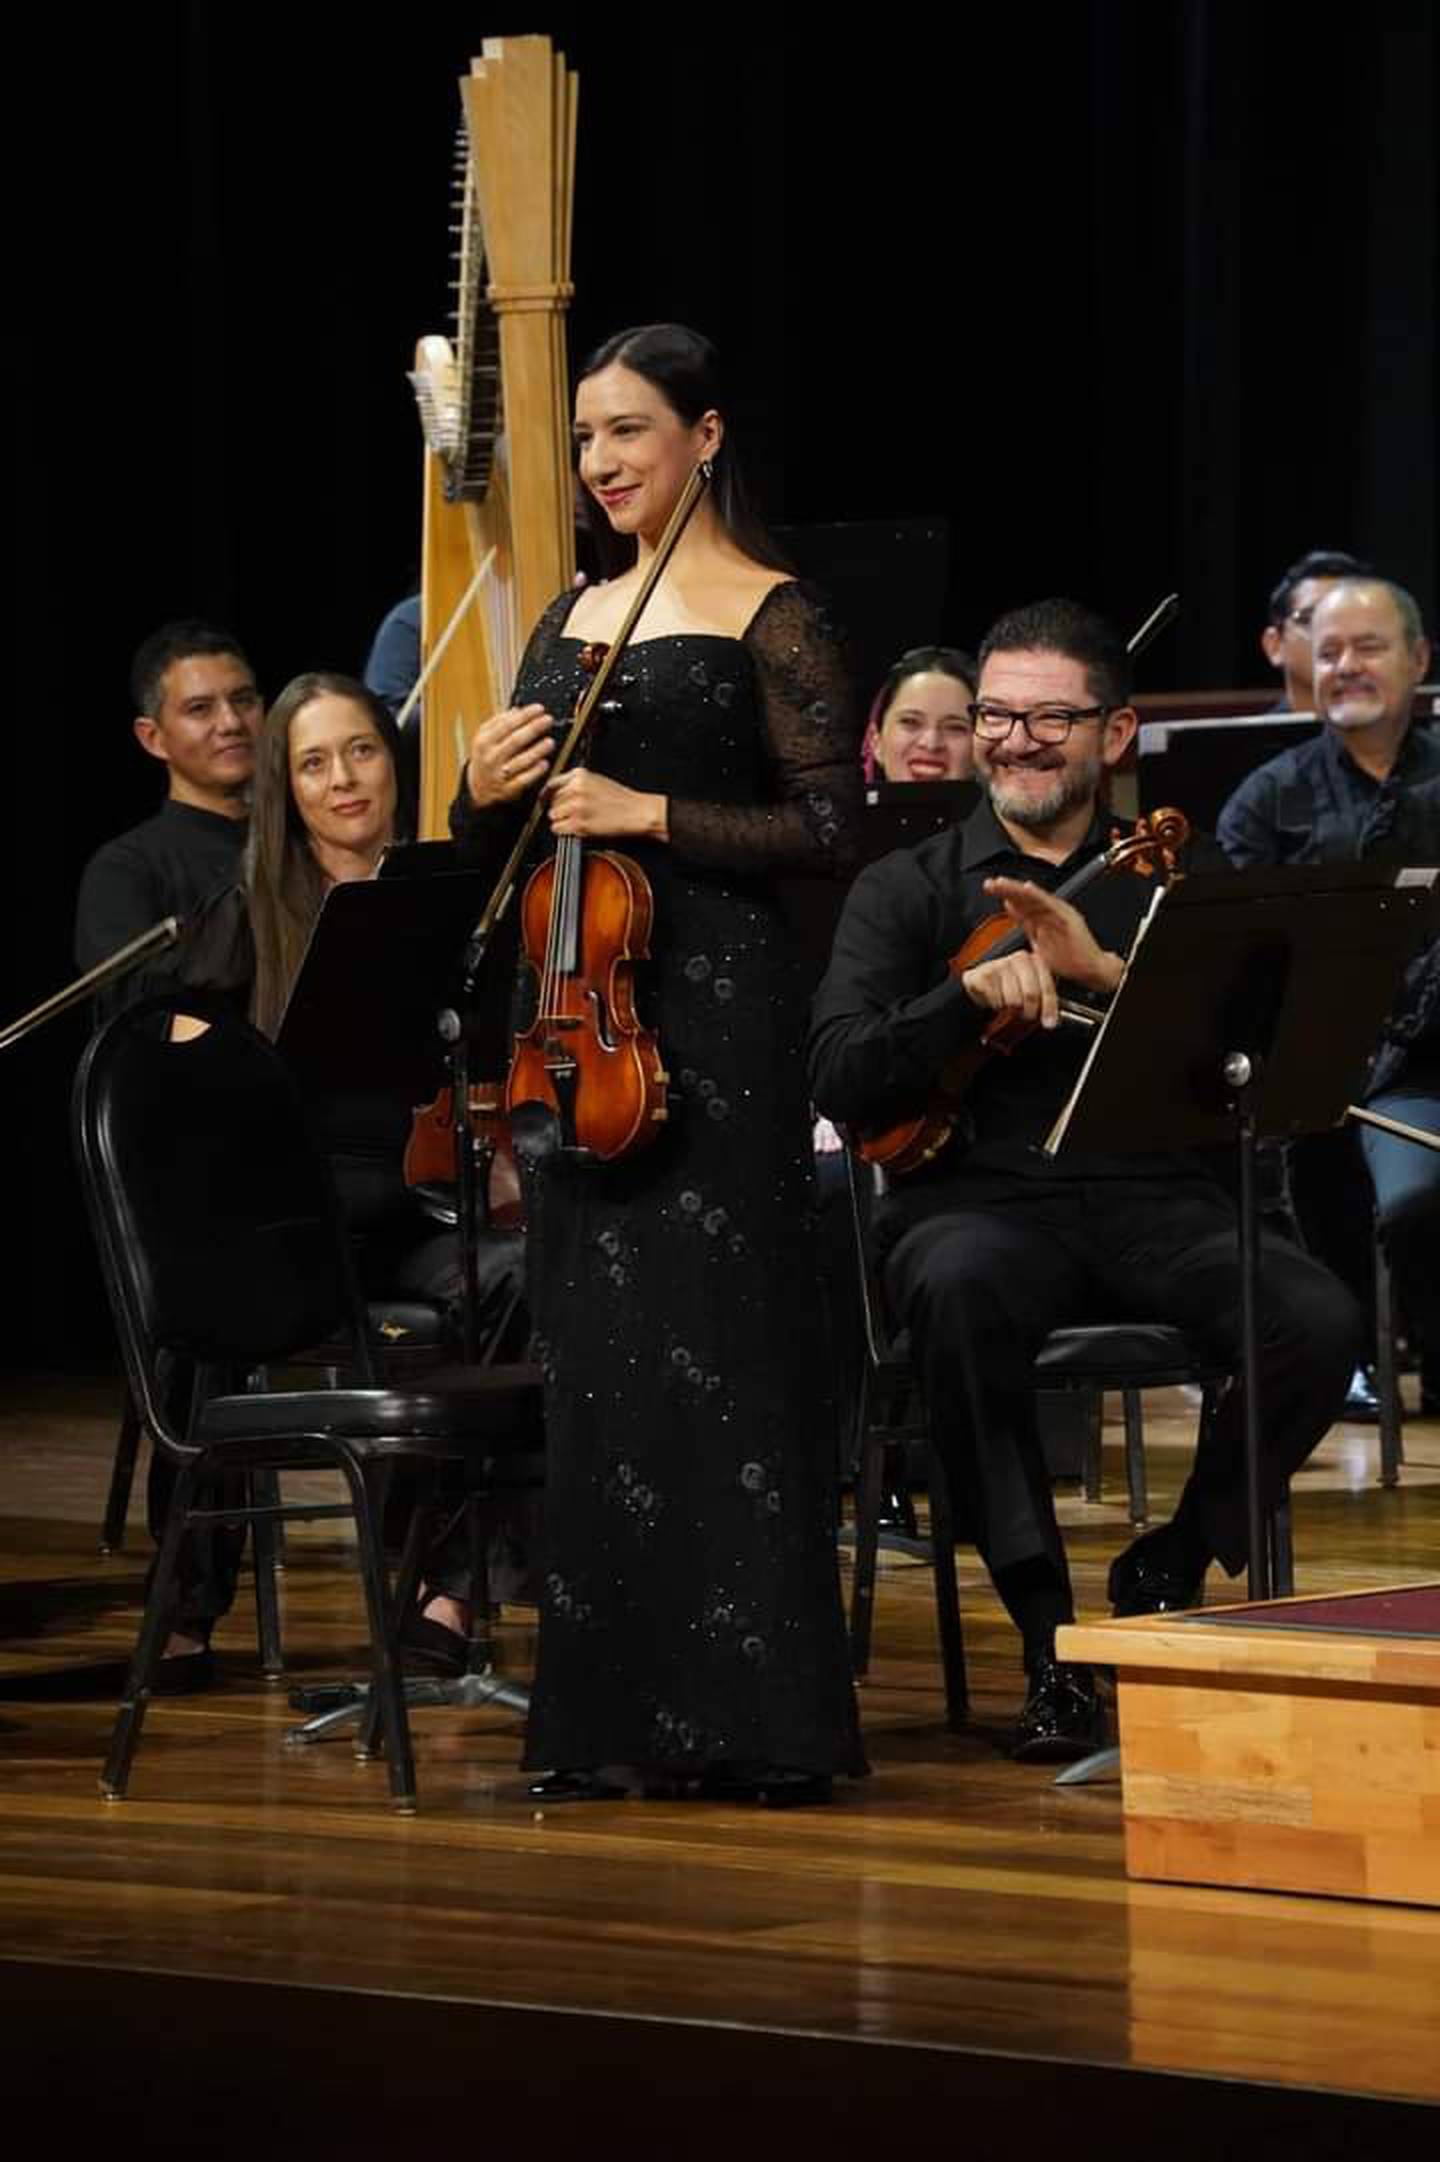 La violinista Rebeca Medrano, quien se presentó como concertino, fue aplaudida por un Teatro Nacional que gozó de buena asistencia. Foto: Cortesía CNM